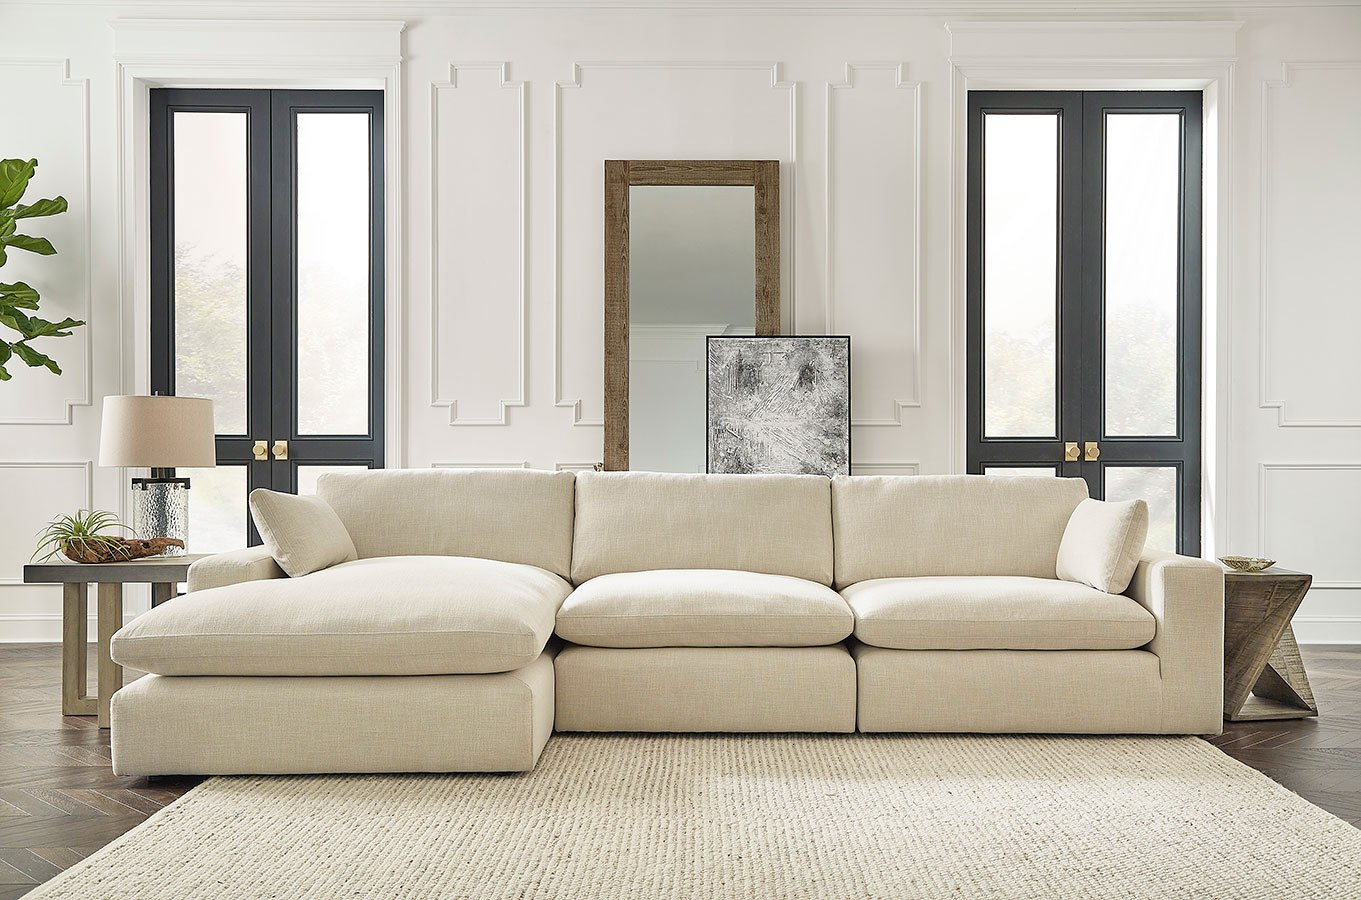 https://www.furniturecart.com/media/catalog/product/1/0/1000616-1000646-1000665-left-chaise-sofa-1.jpg